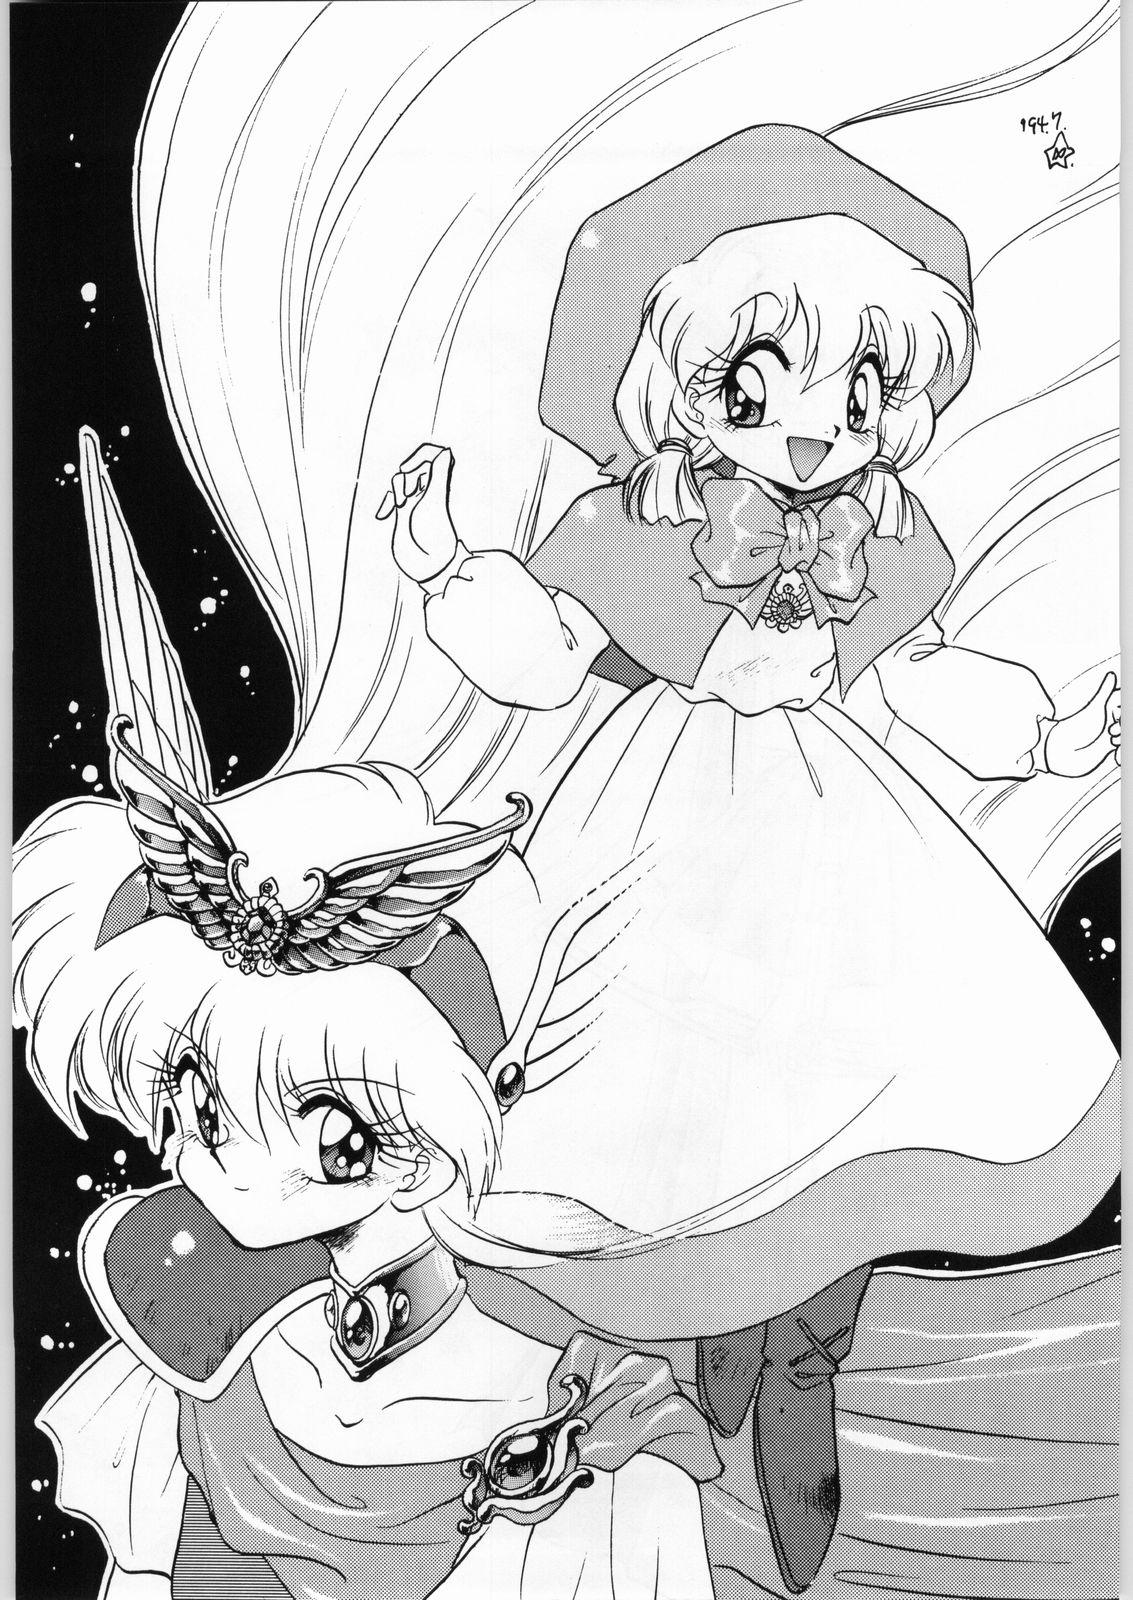 This Dance of Princess 3 - Sailor moon Tenchi muyo Akazukin cha cha Minky momo Ng knight lamune and 40 Teenager - Page 4